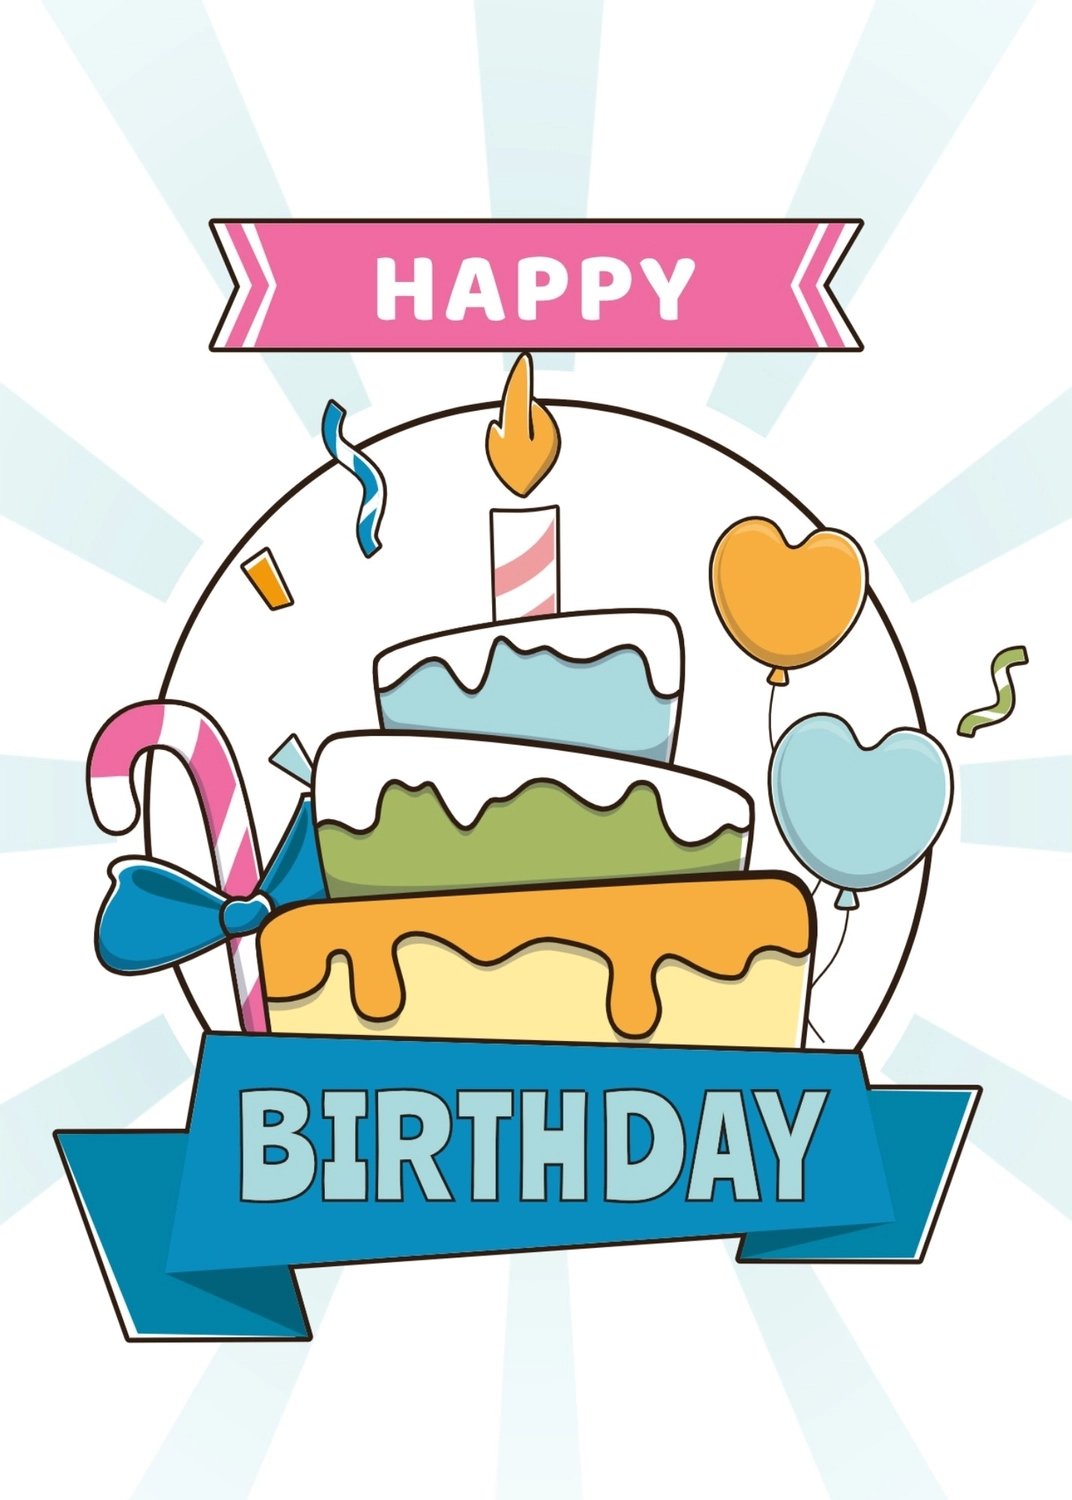 誕生日カード　バースデーケーキ, バースデーケーキ, バースデーカード, 作成, 誕生日カードテンプレート